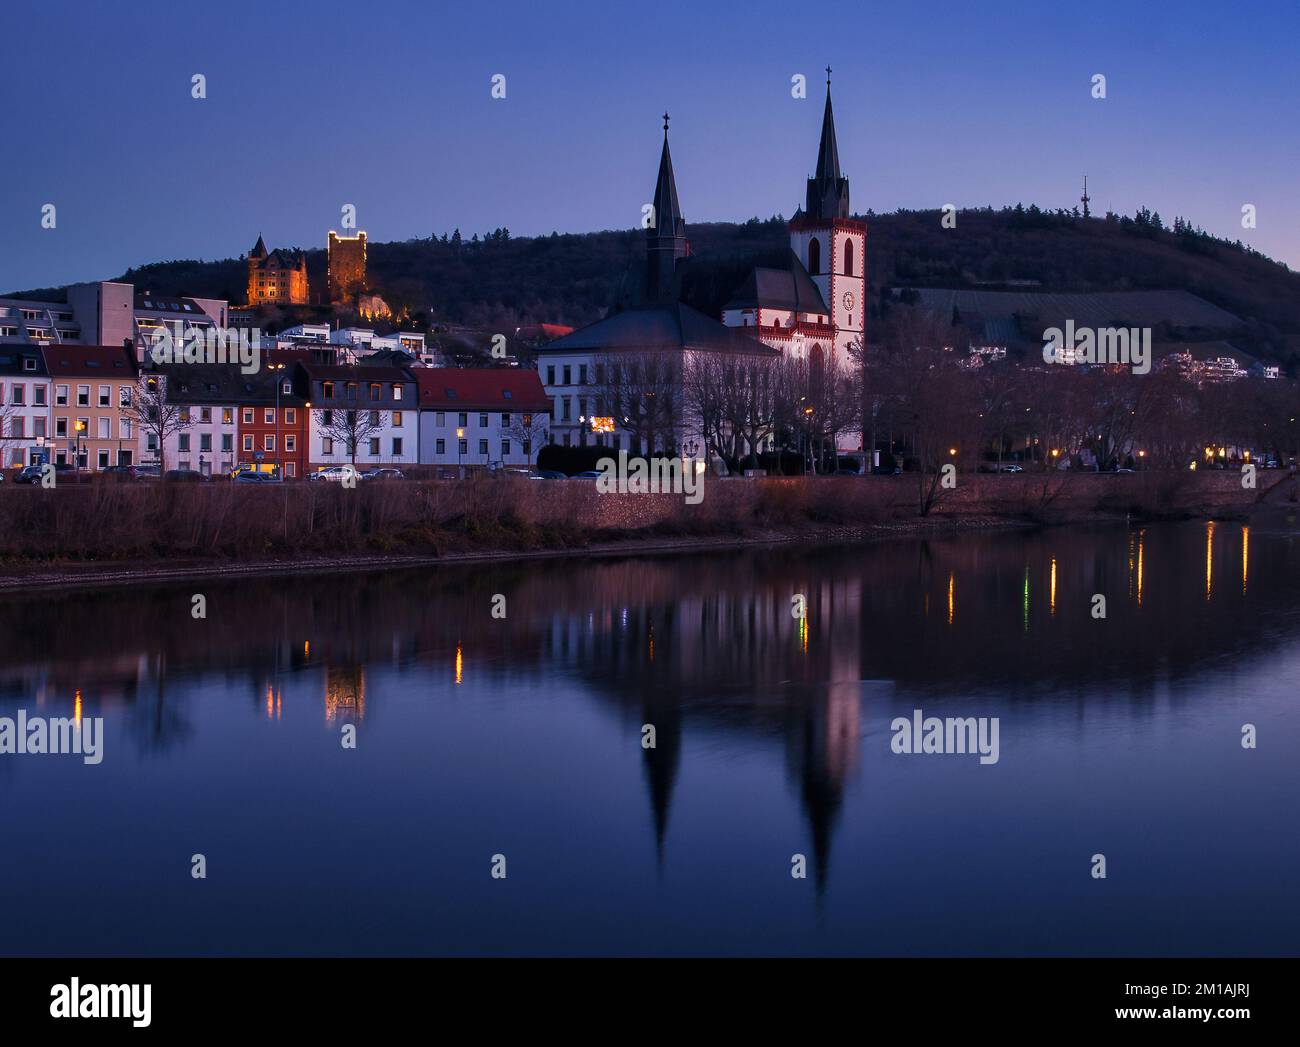 Bingen am Rhein, Deutschland - 10. Januar 2021: Die Basilika St. Martin Kirche und andere Gebäude neben dem Rhein und Schloss Klopp beleuchtet Stockfoto